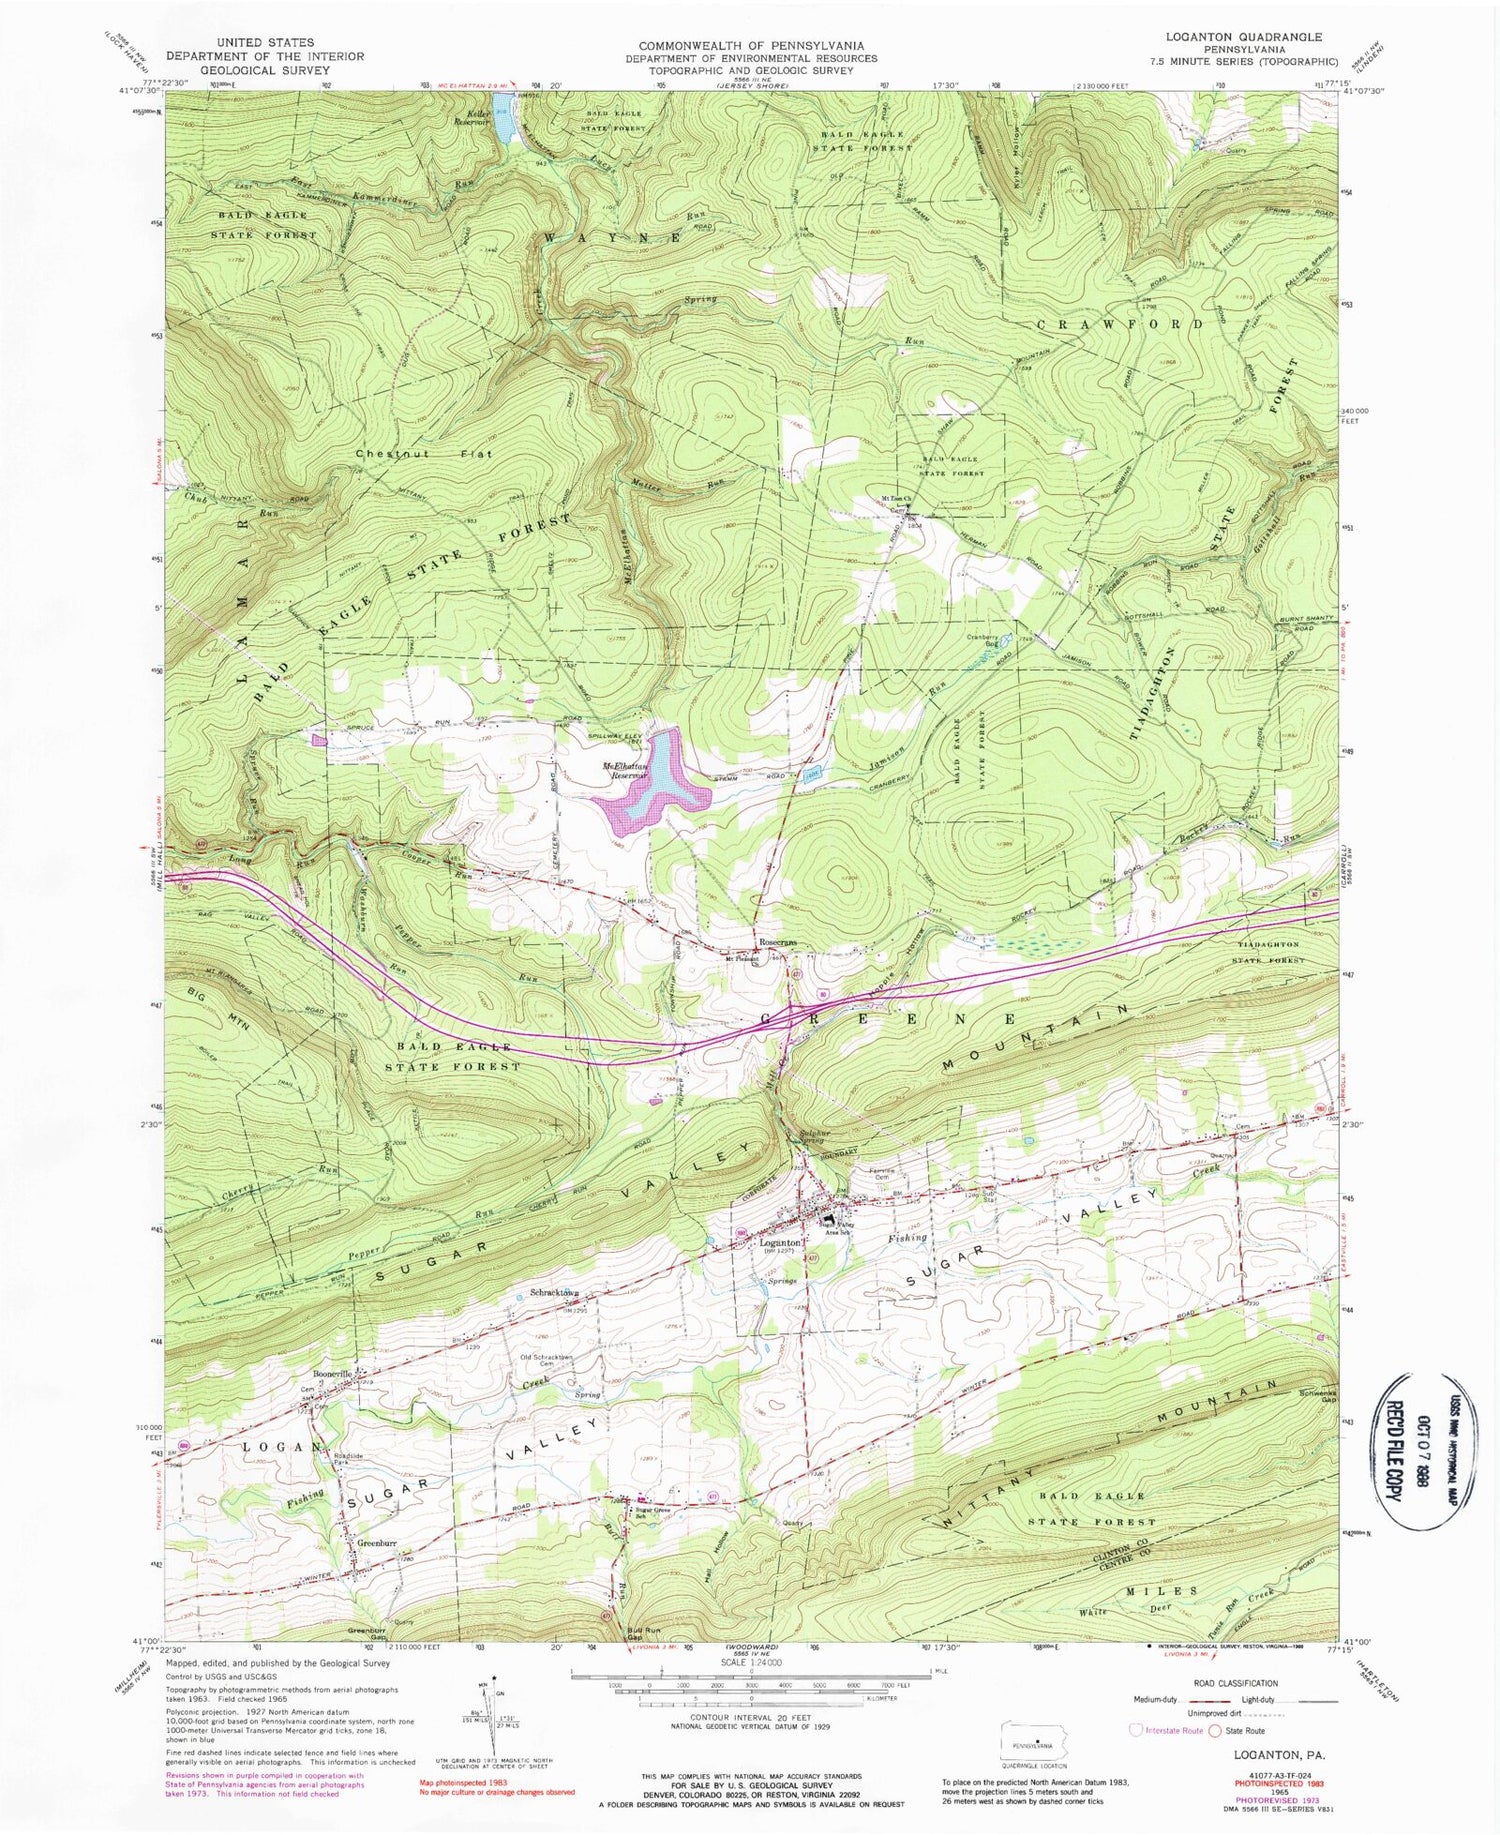 Classic USGS Loganton Pennsylvania 7.5'x7.5' Topo Map Image